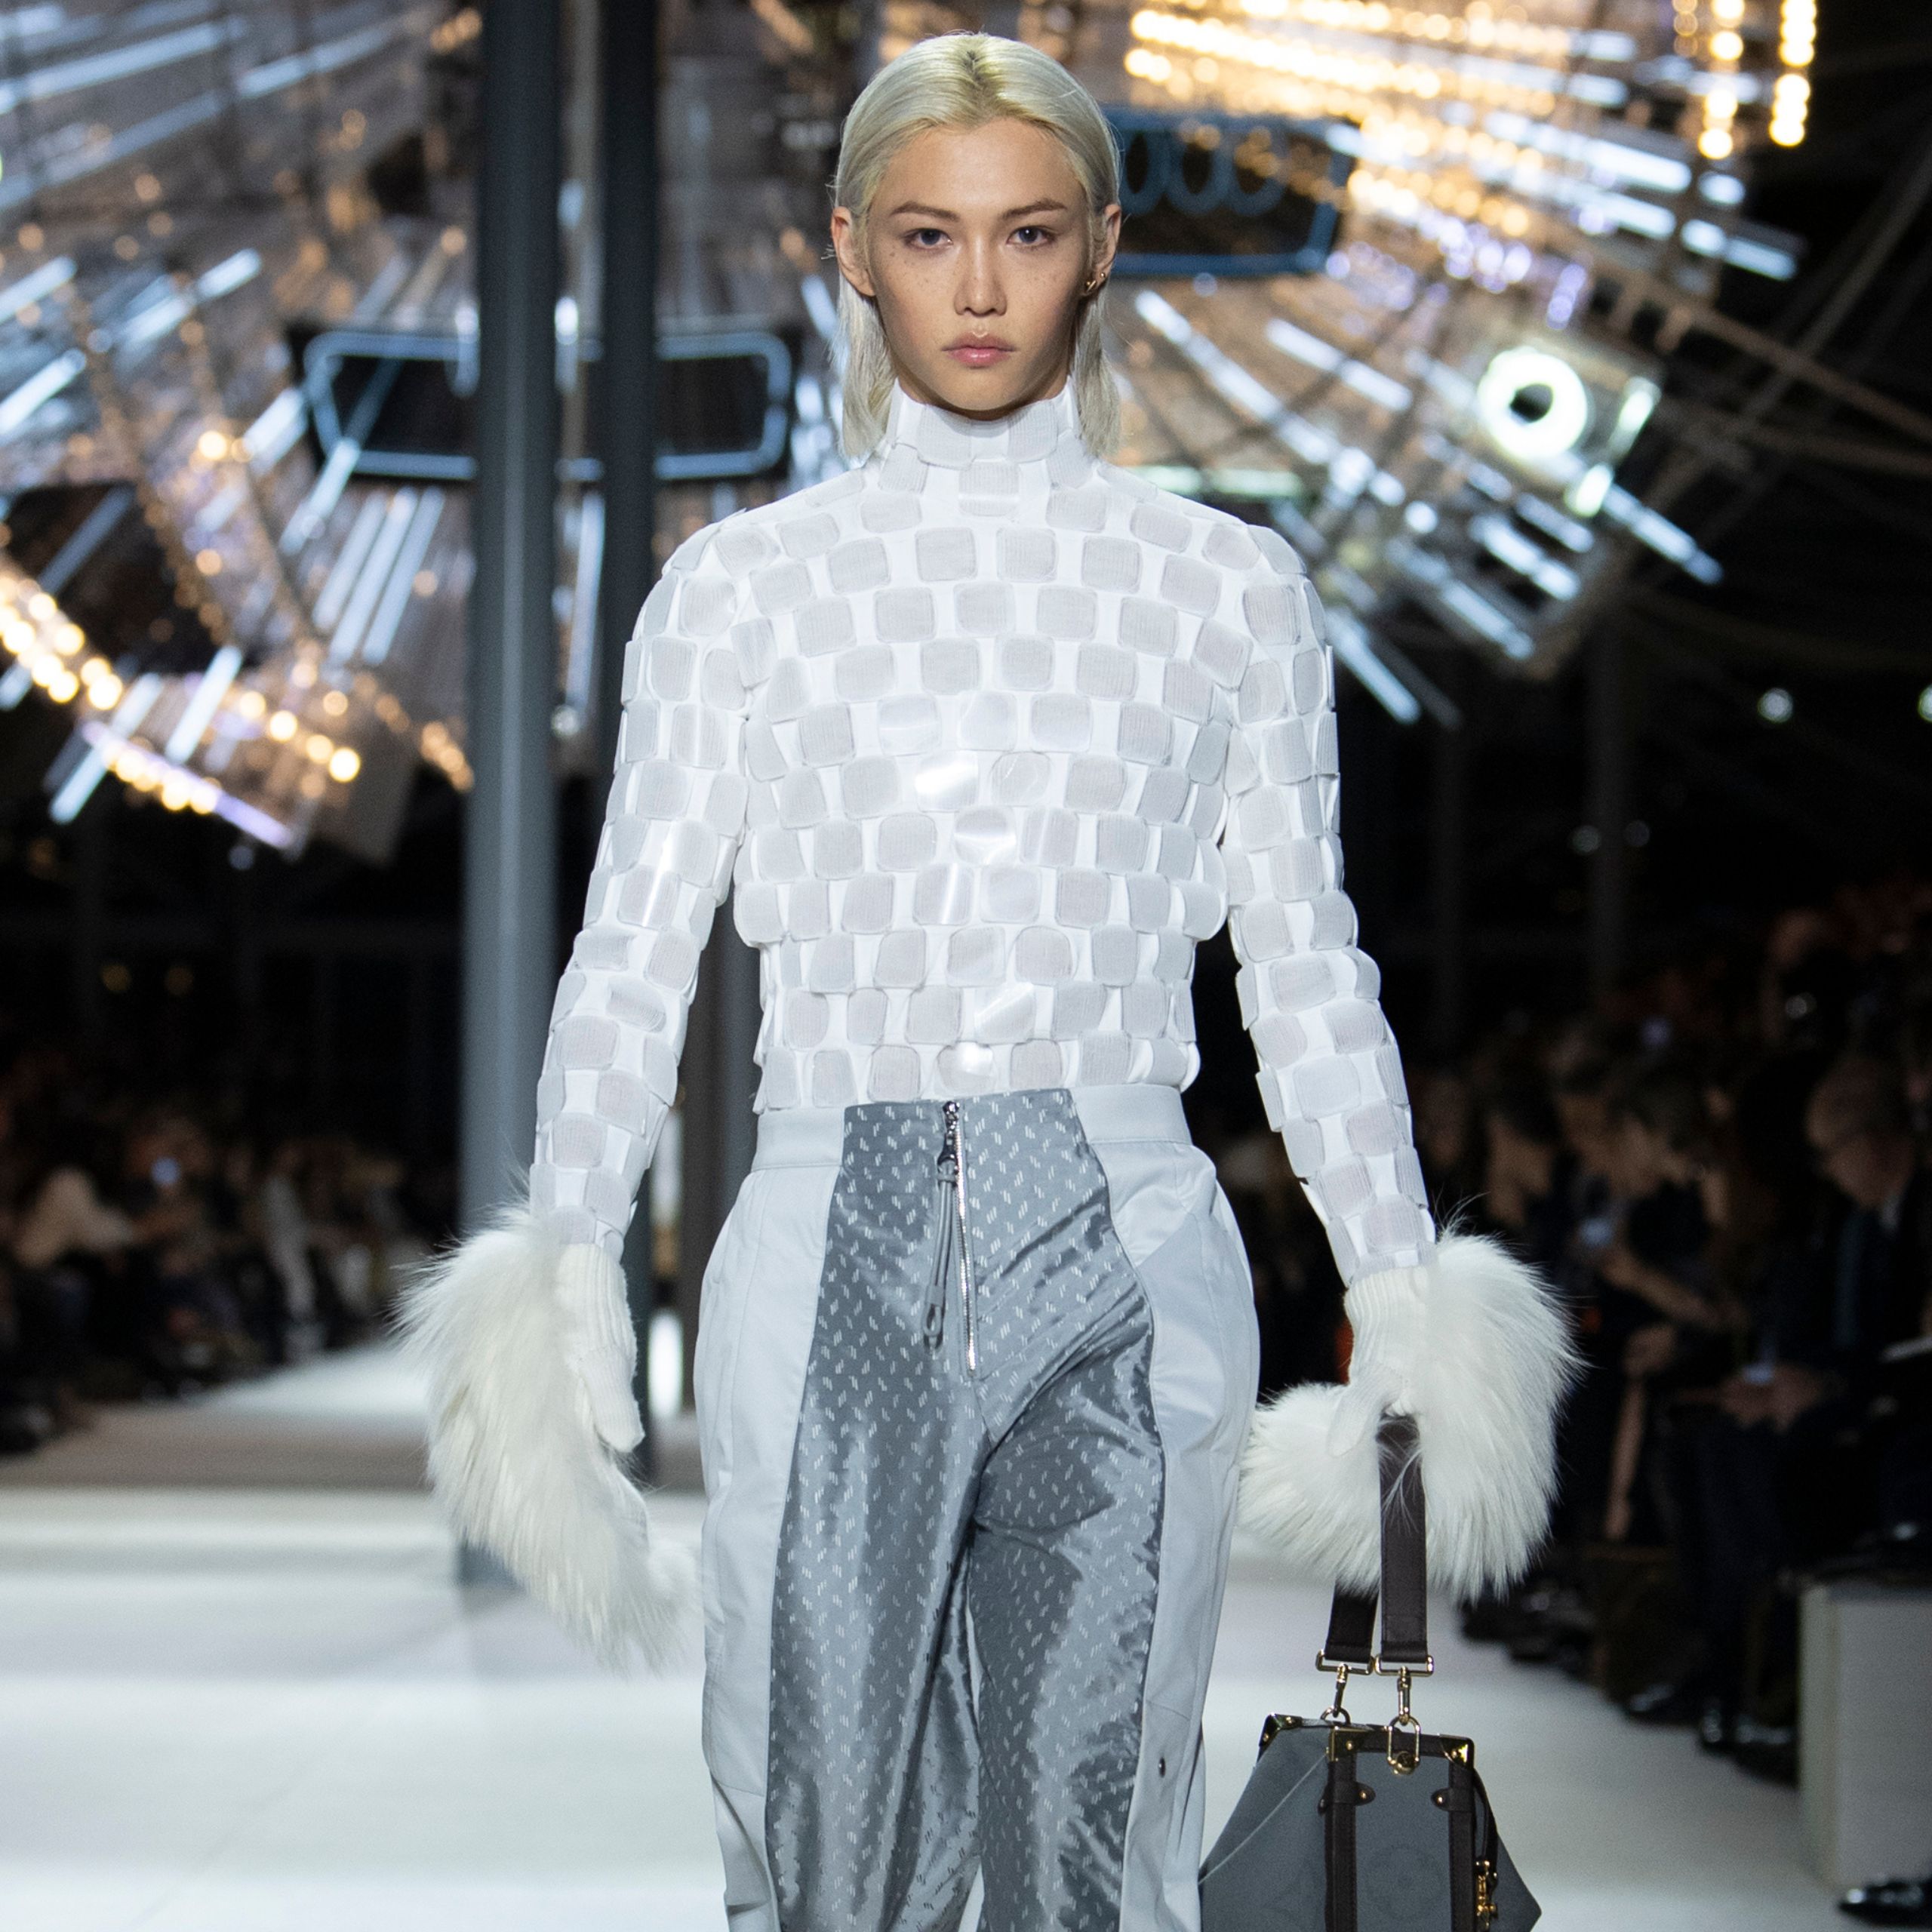 Felix of Stray Kids Makes His Runway Debut at Louis Vuitton During Paris Fashion Week